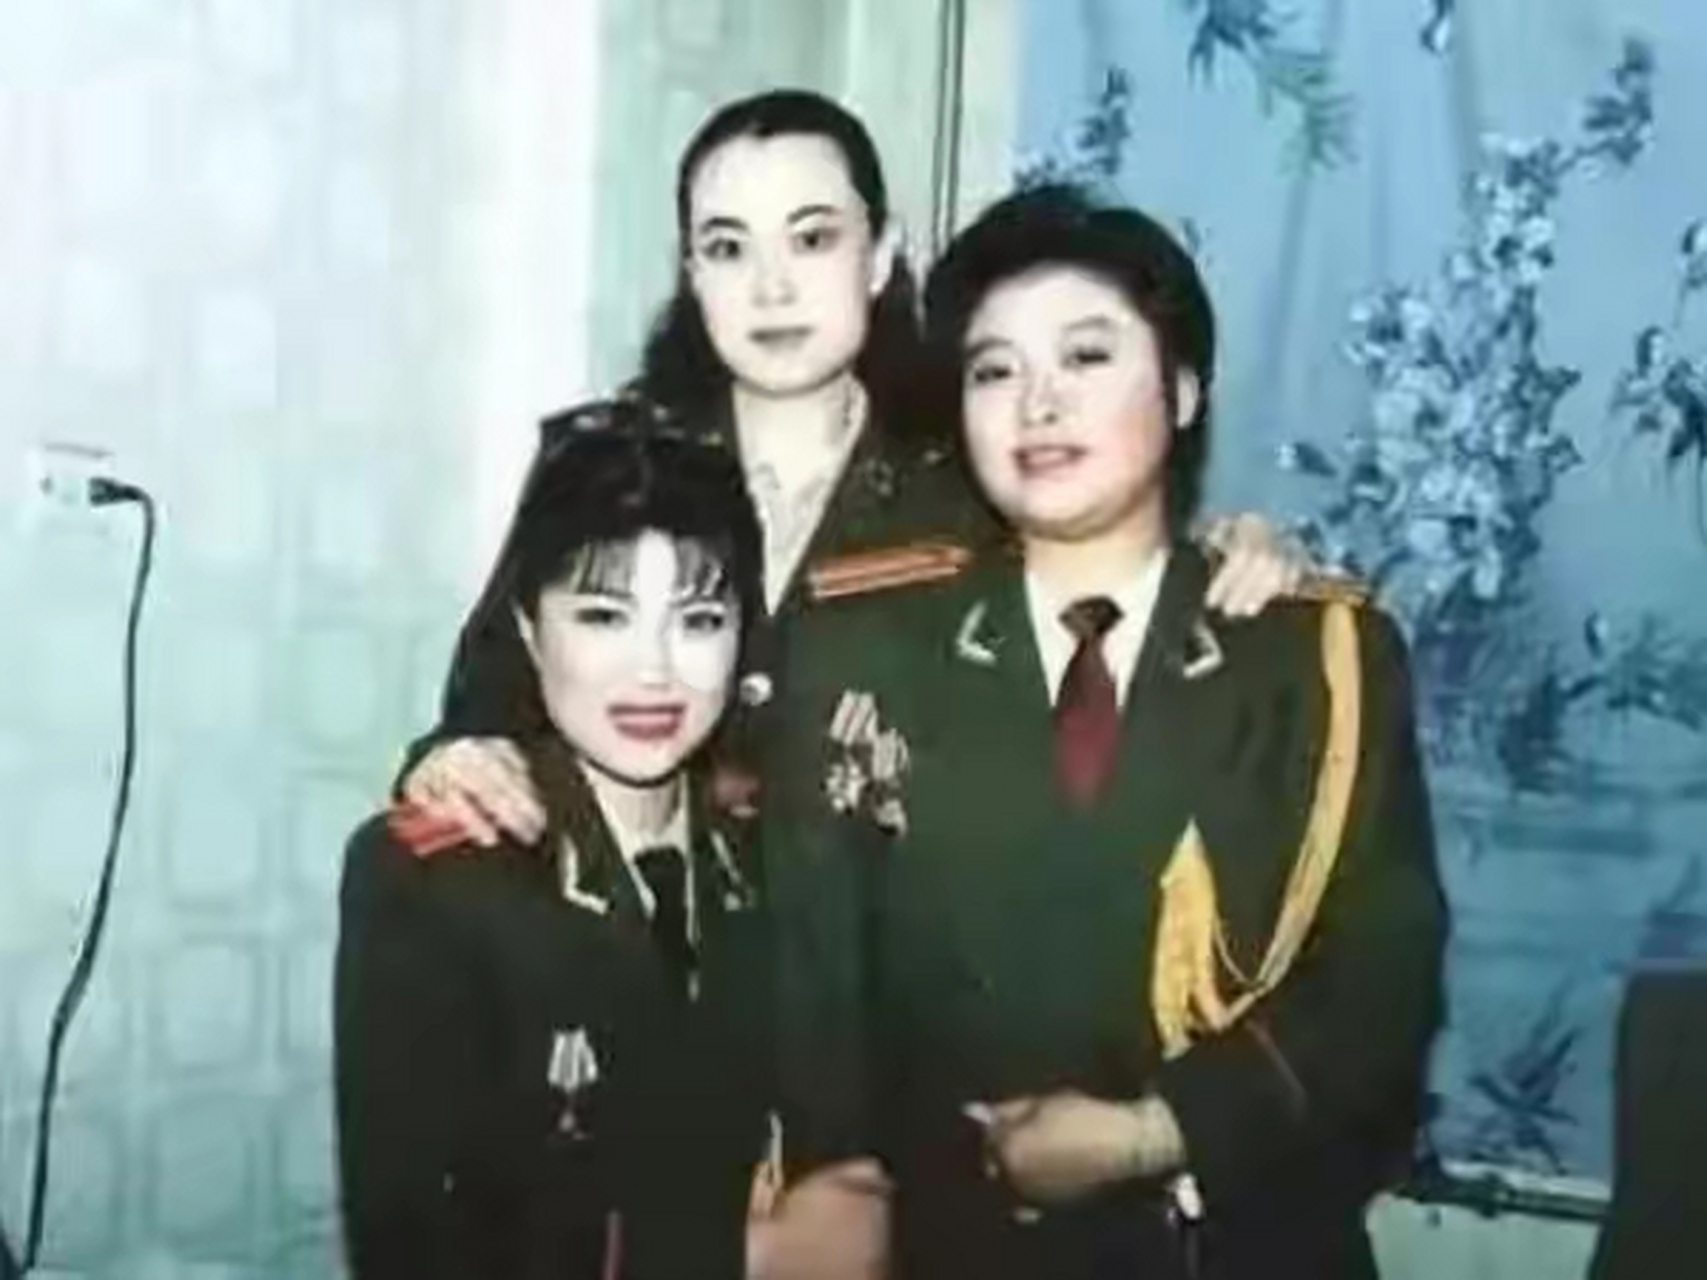 韩红年轻时一身军装制服看起来非常的精神干练,与现在判若两人,但是